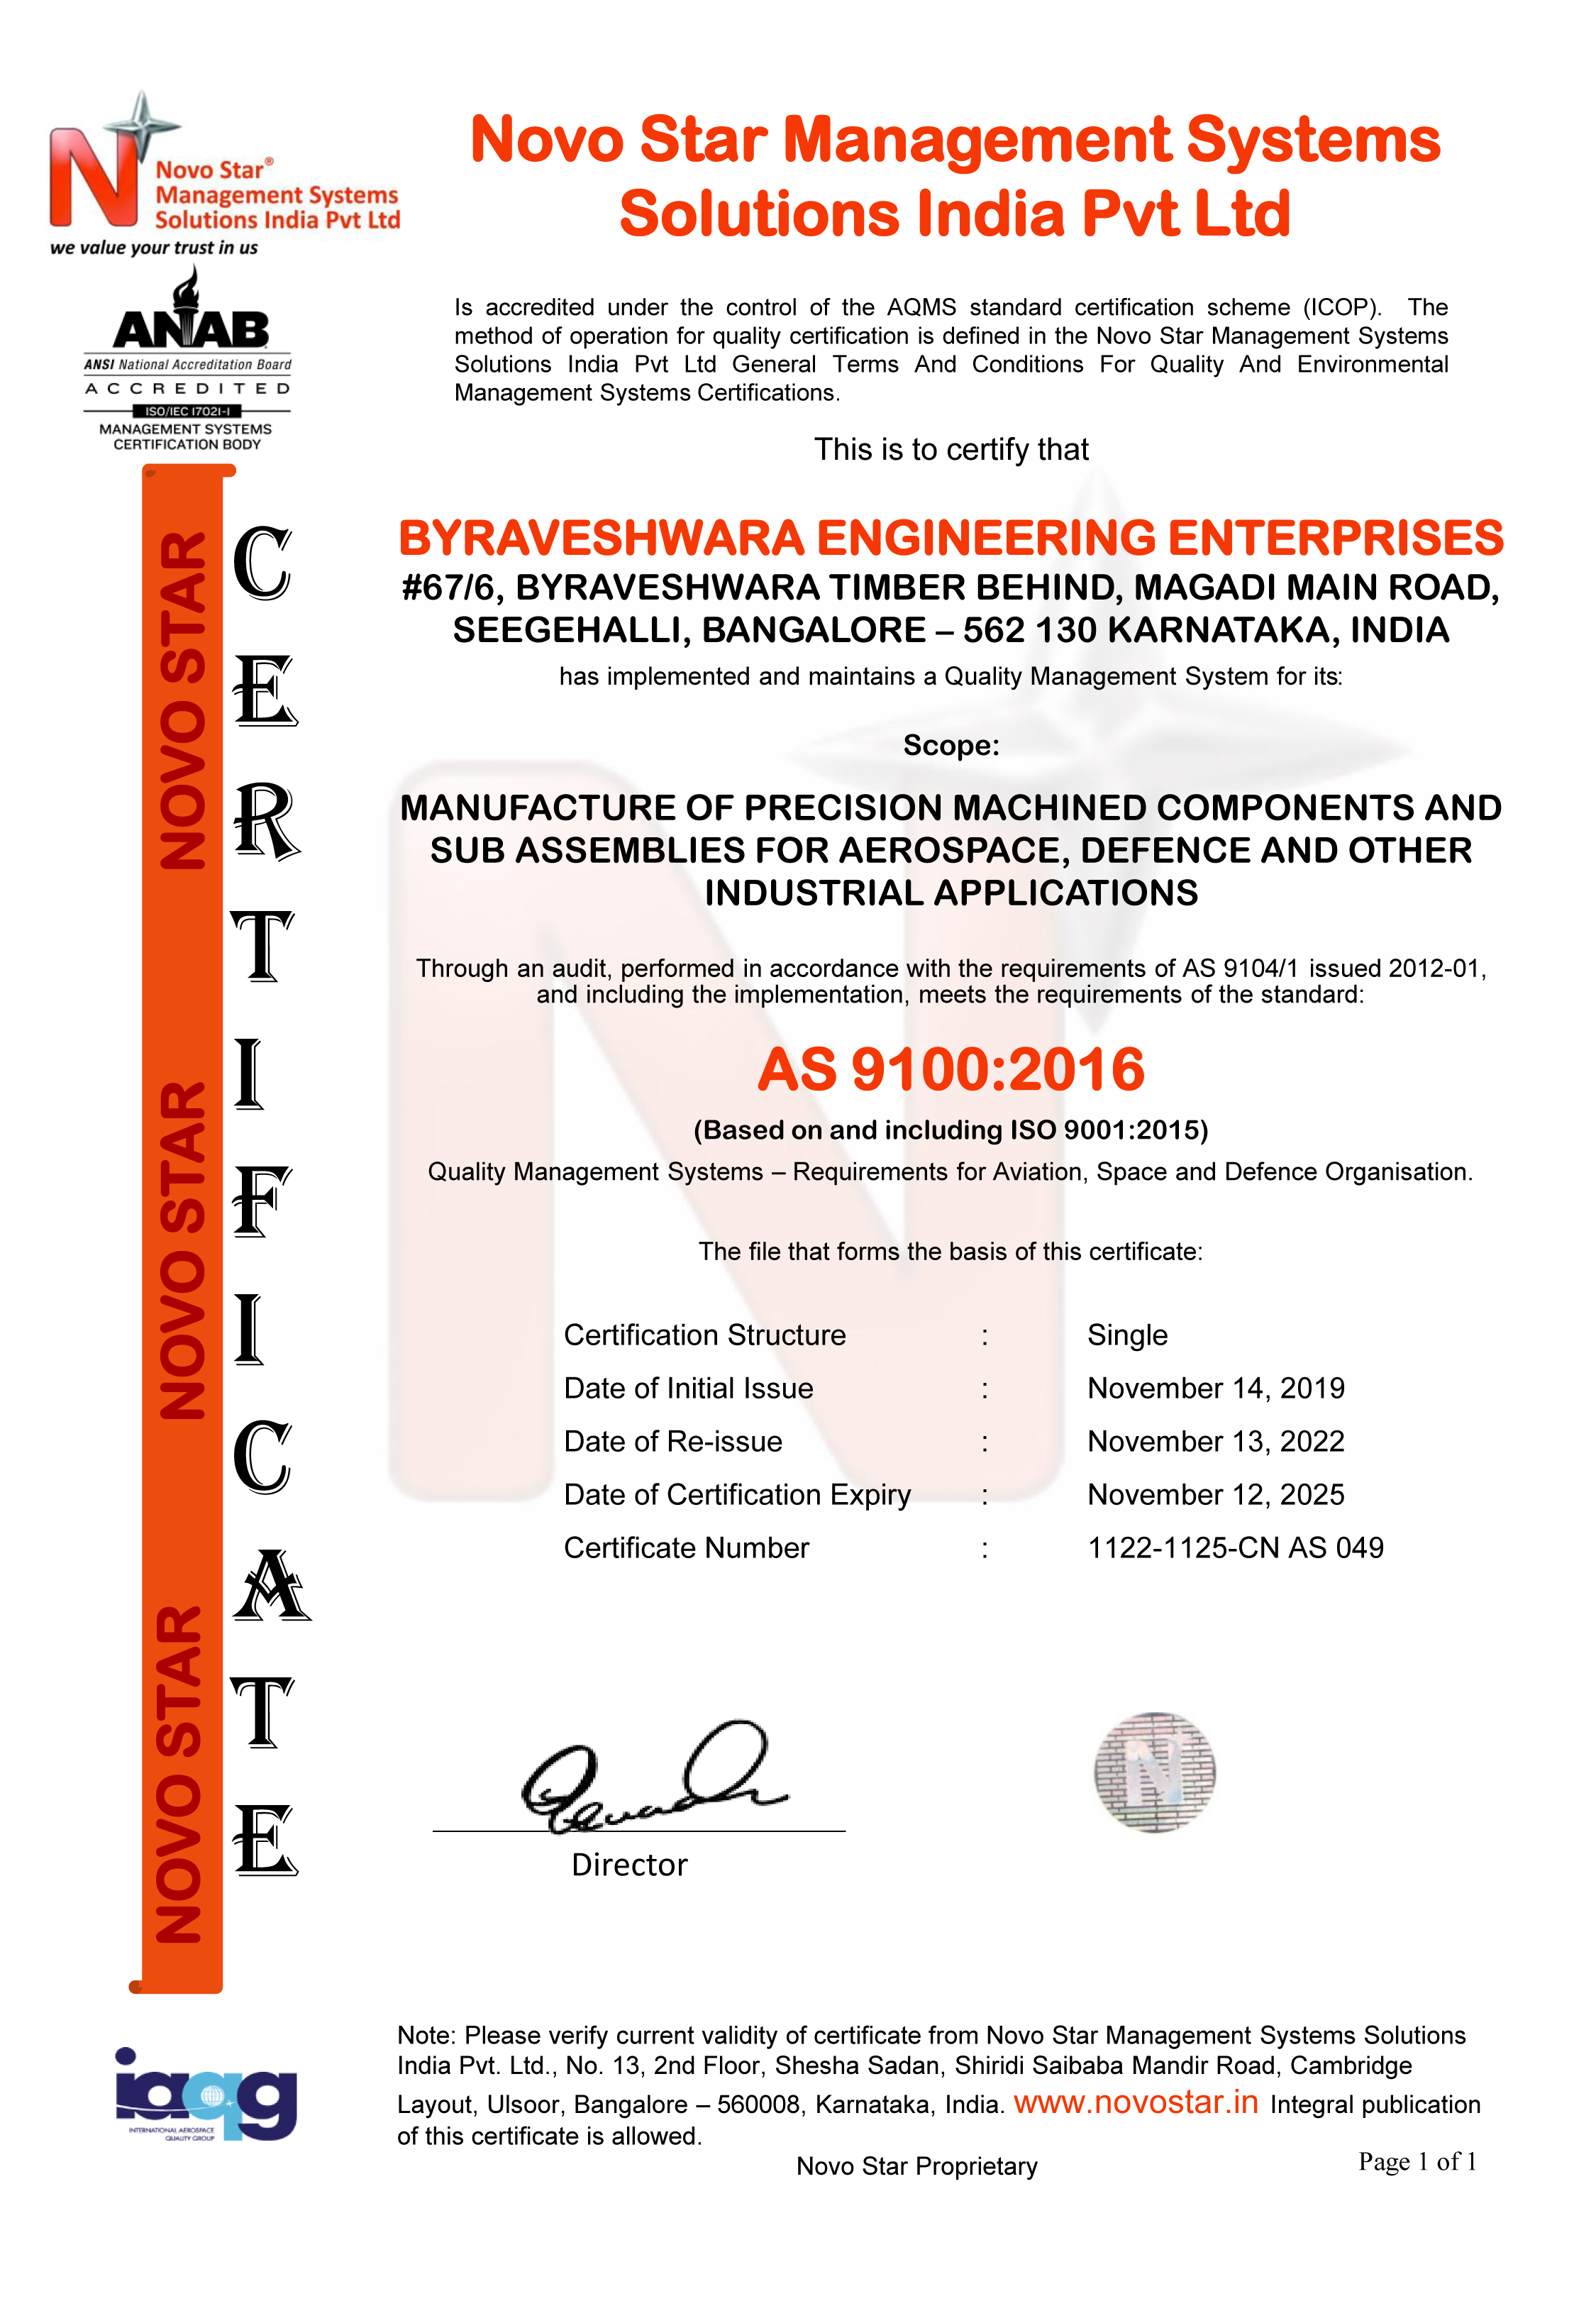 AS 9100-2016 CERTIFICATE Byraveshwara Engineering Enterprises